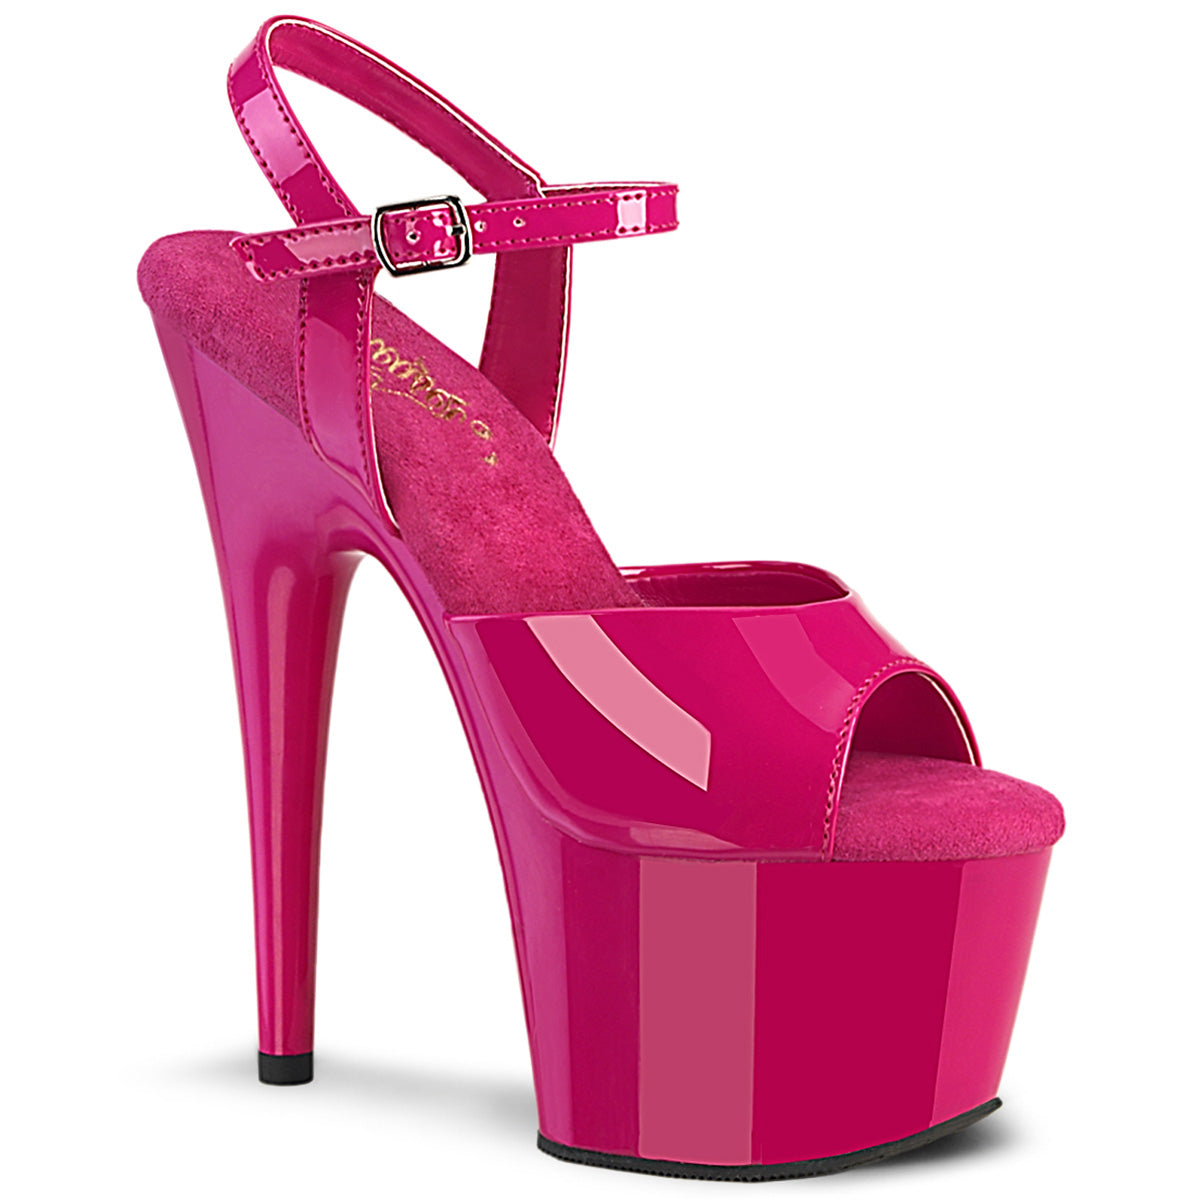 Pleaser ADORE-709 Hot Pink Pat 7 Inch (178mm) Heel, 2 3/4 Inch (70mm) Platform Ankle Strap Sandal